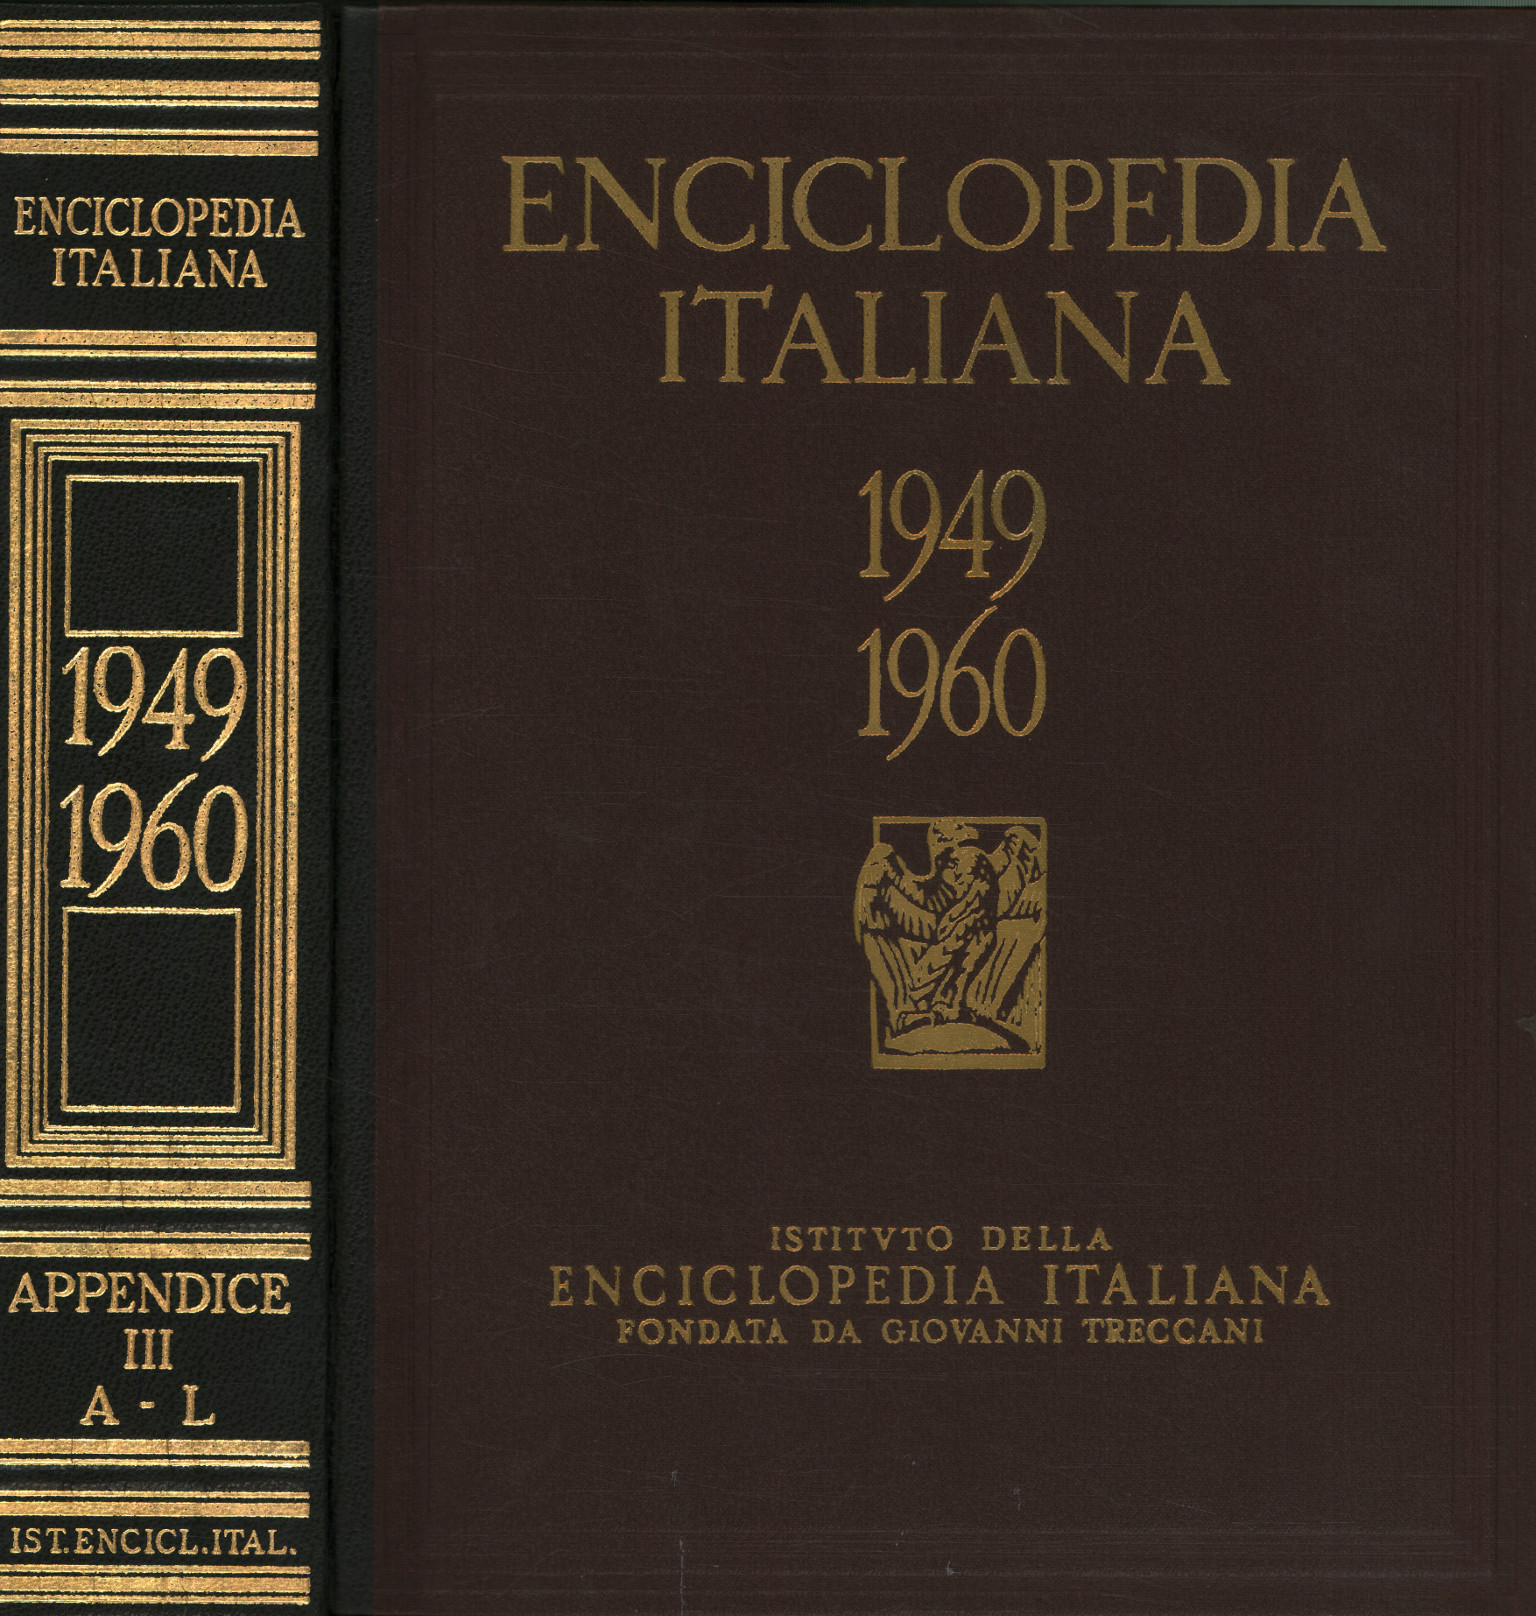 Italienische Enzyklopädie der Wissenschaftsbriefe%, Italienische Enzyklopädie der Wissenschaftsbriefe%